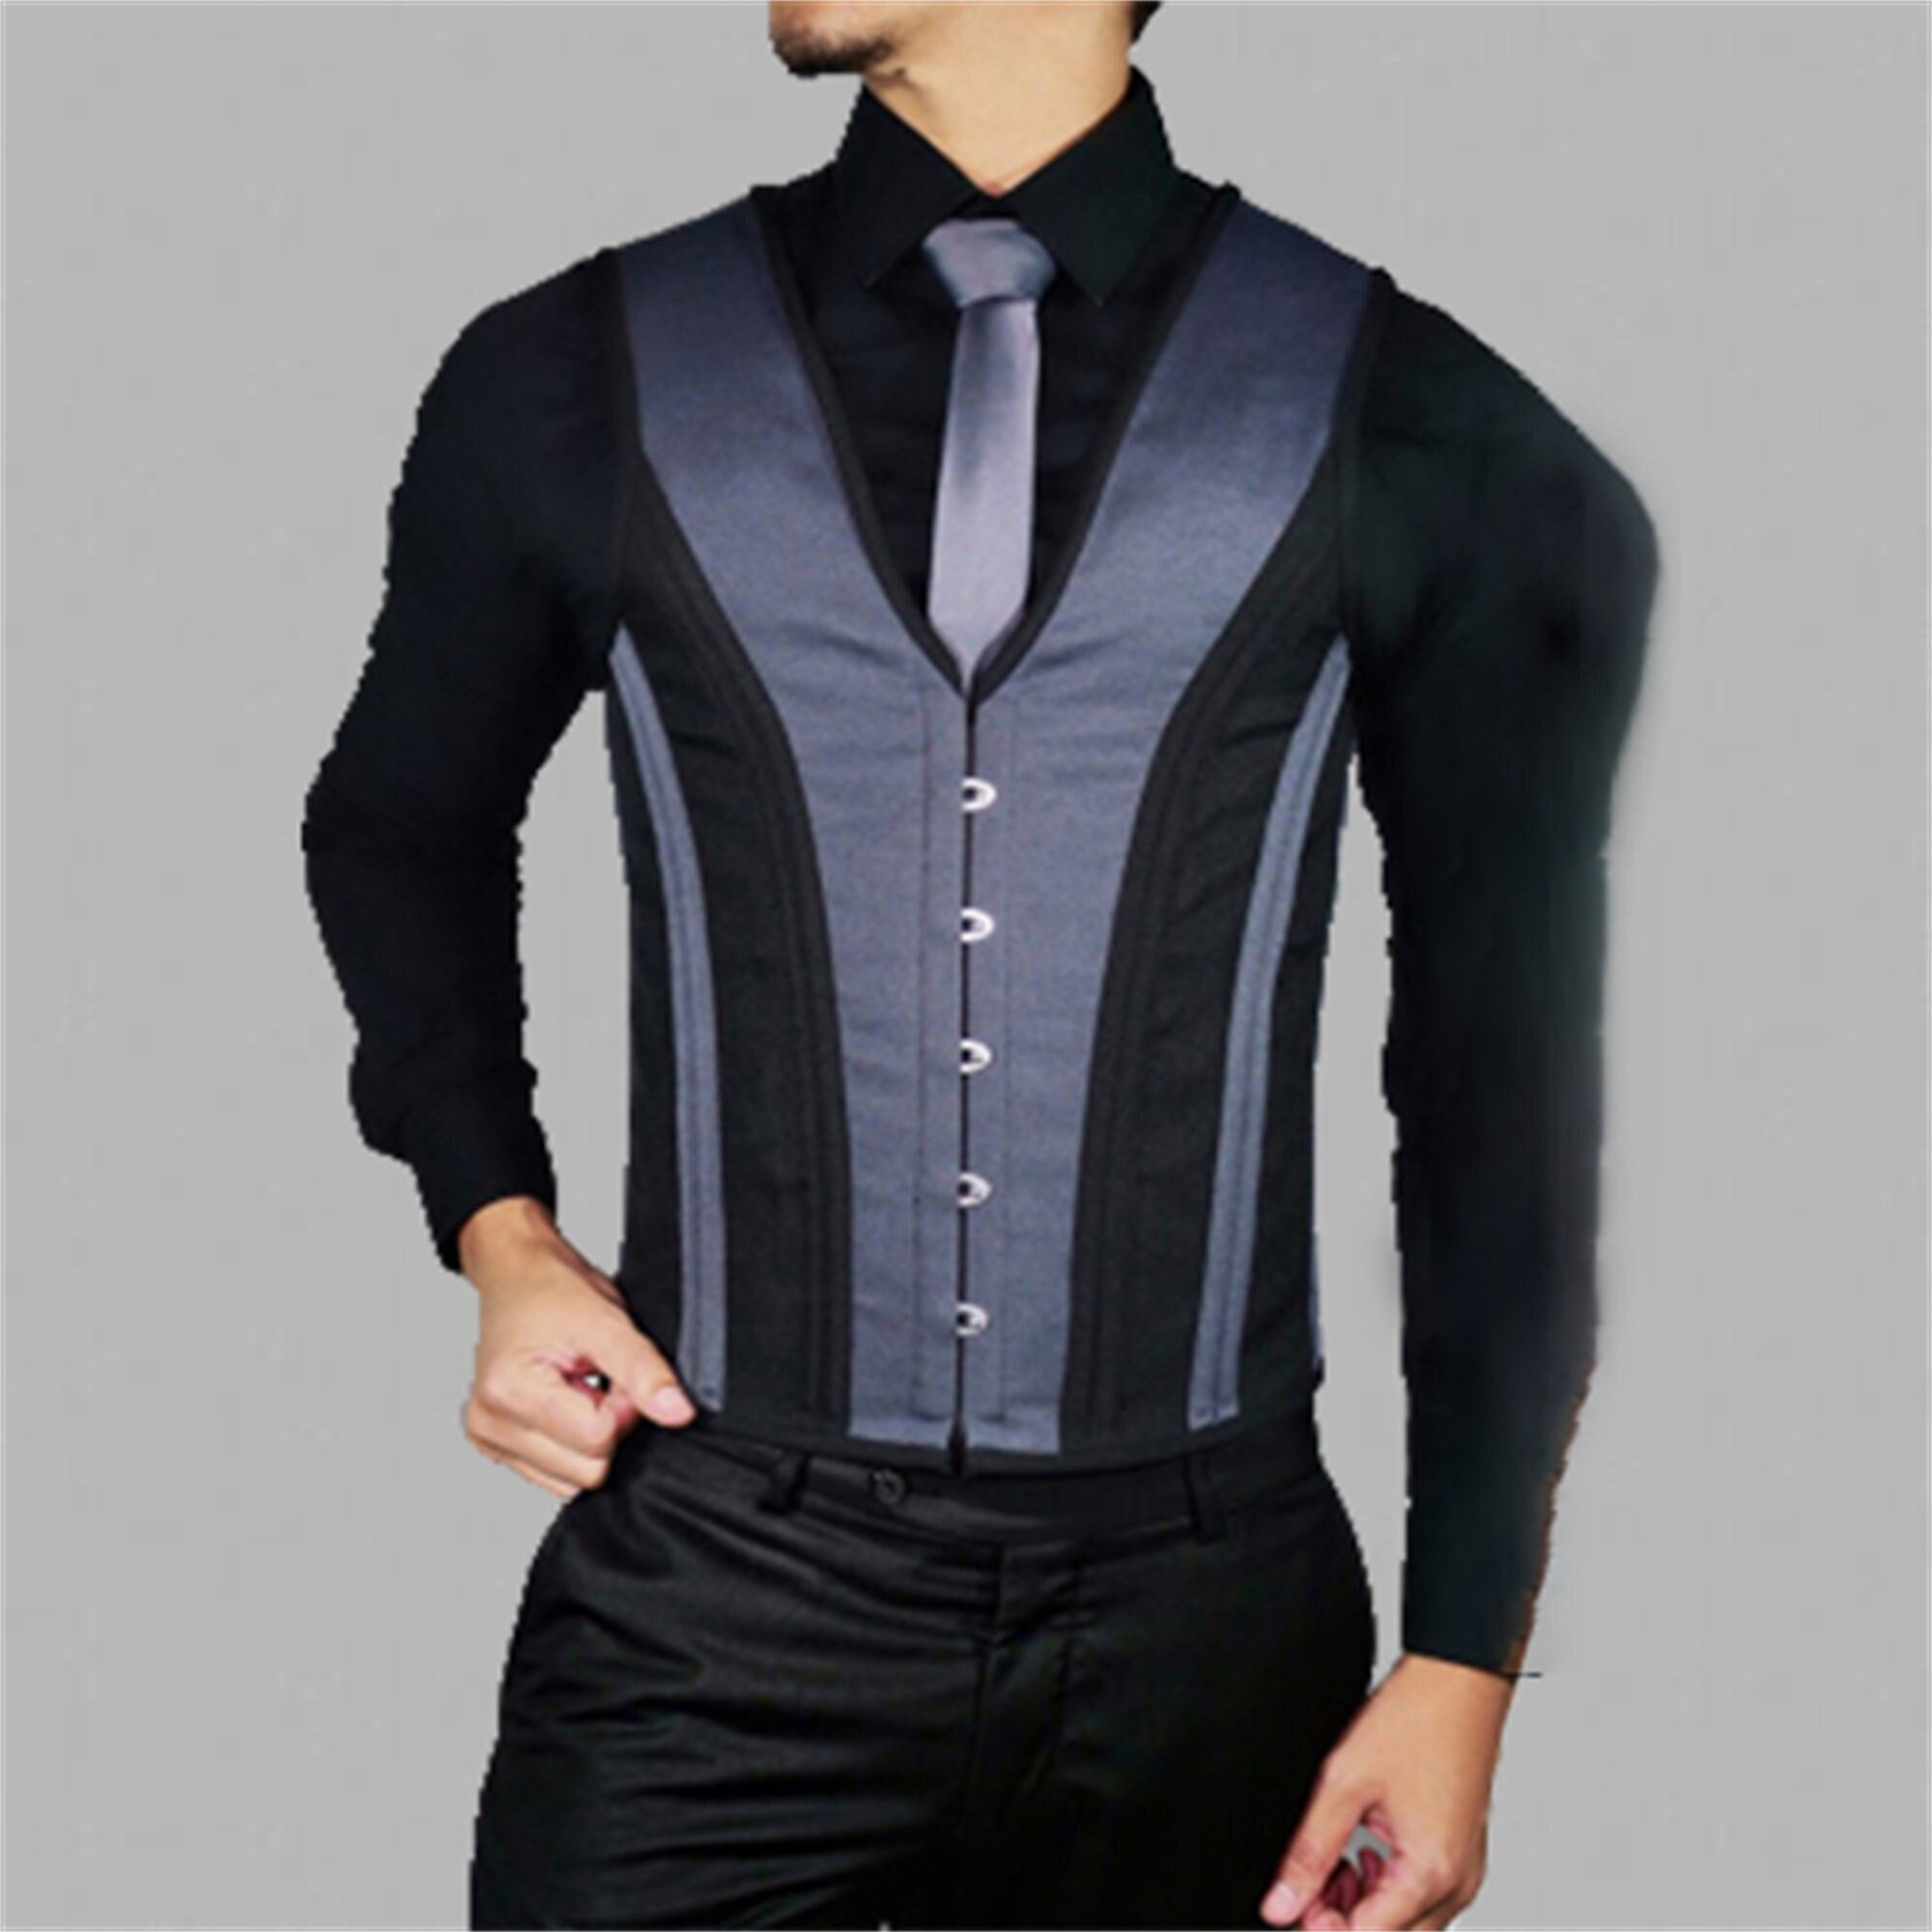 Y2K Men's Lace-Up Corset Vest - Gentleman Costume Waist Trainer